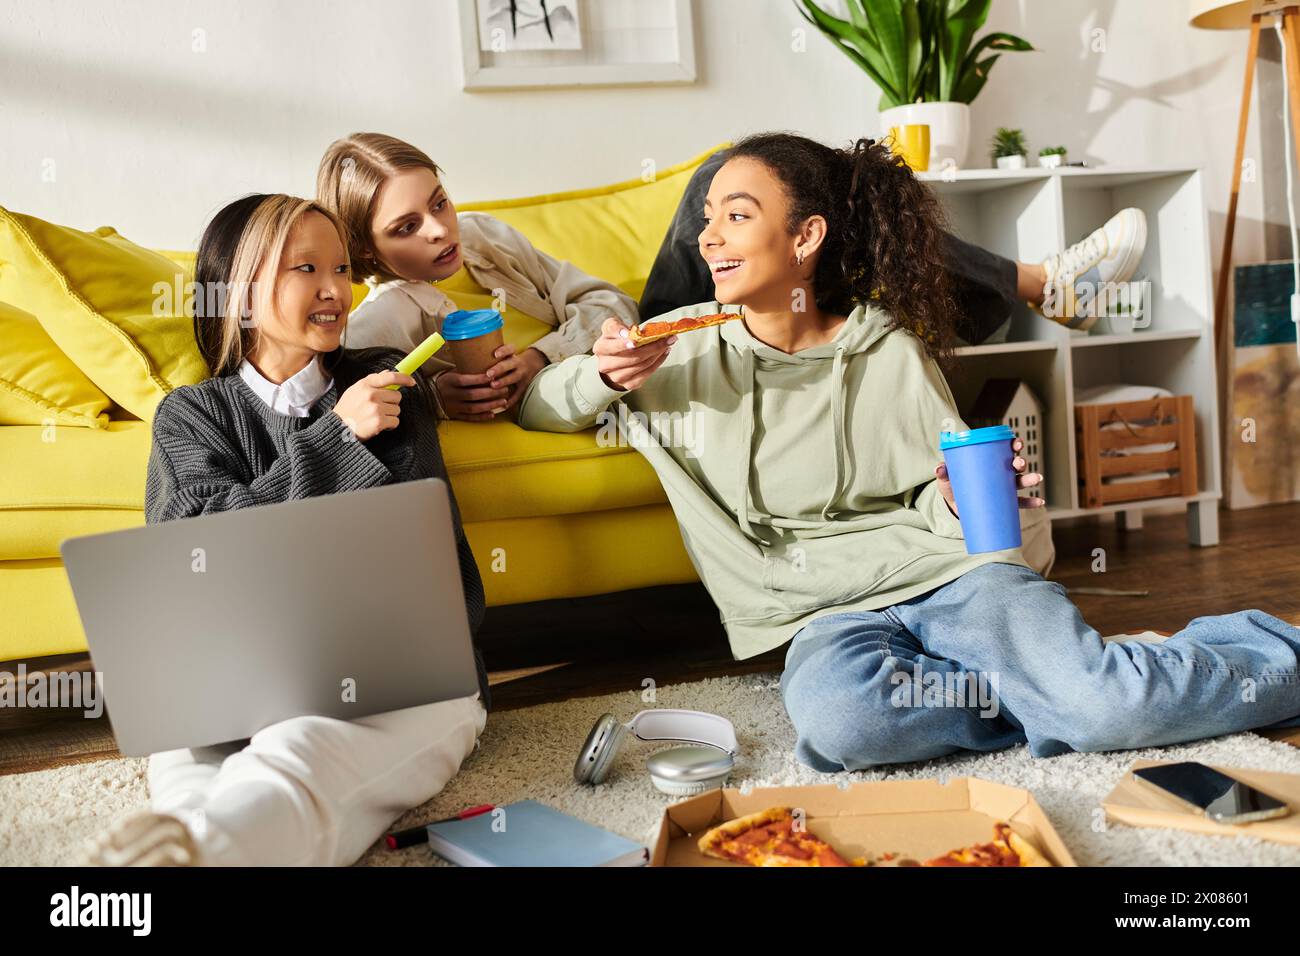 Eine Gruppe von Mädchen im Teenageralter genießt Pizza, während sie auf dem Boden sitzen und sich über Essen und Freundschaft unterhalten. Stockfoto